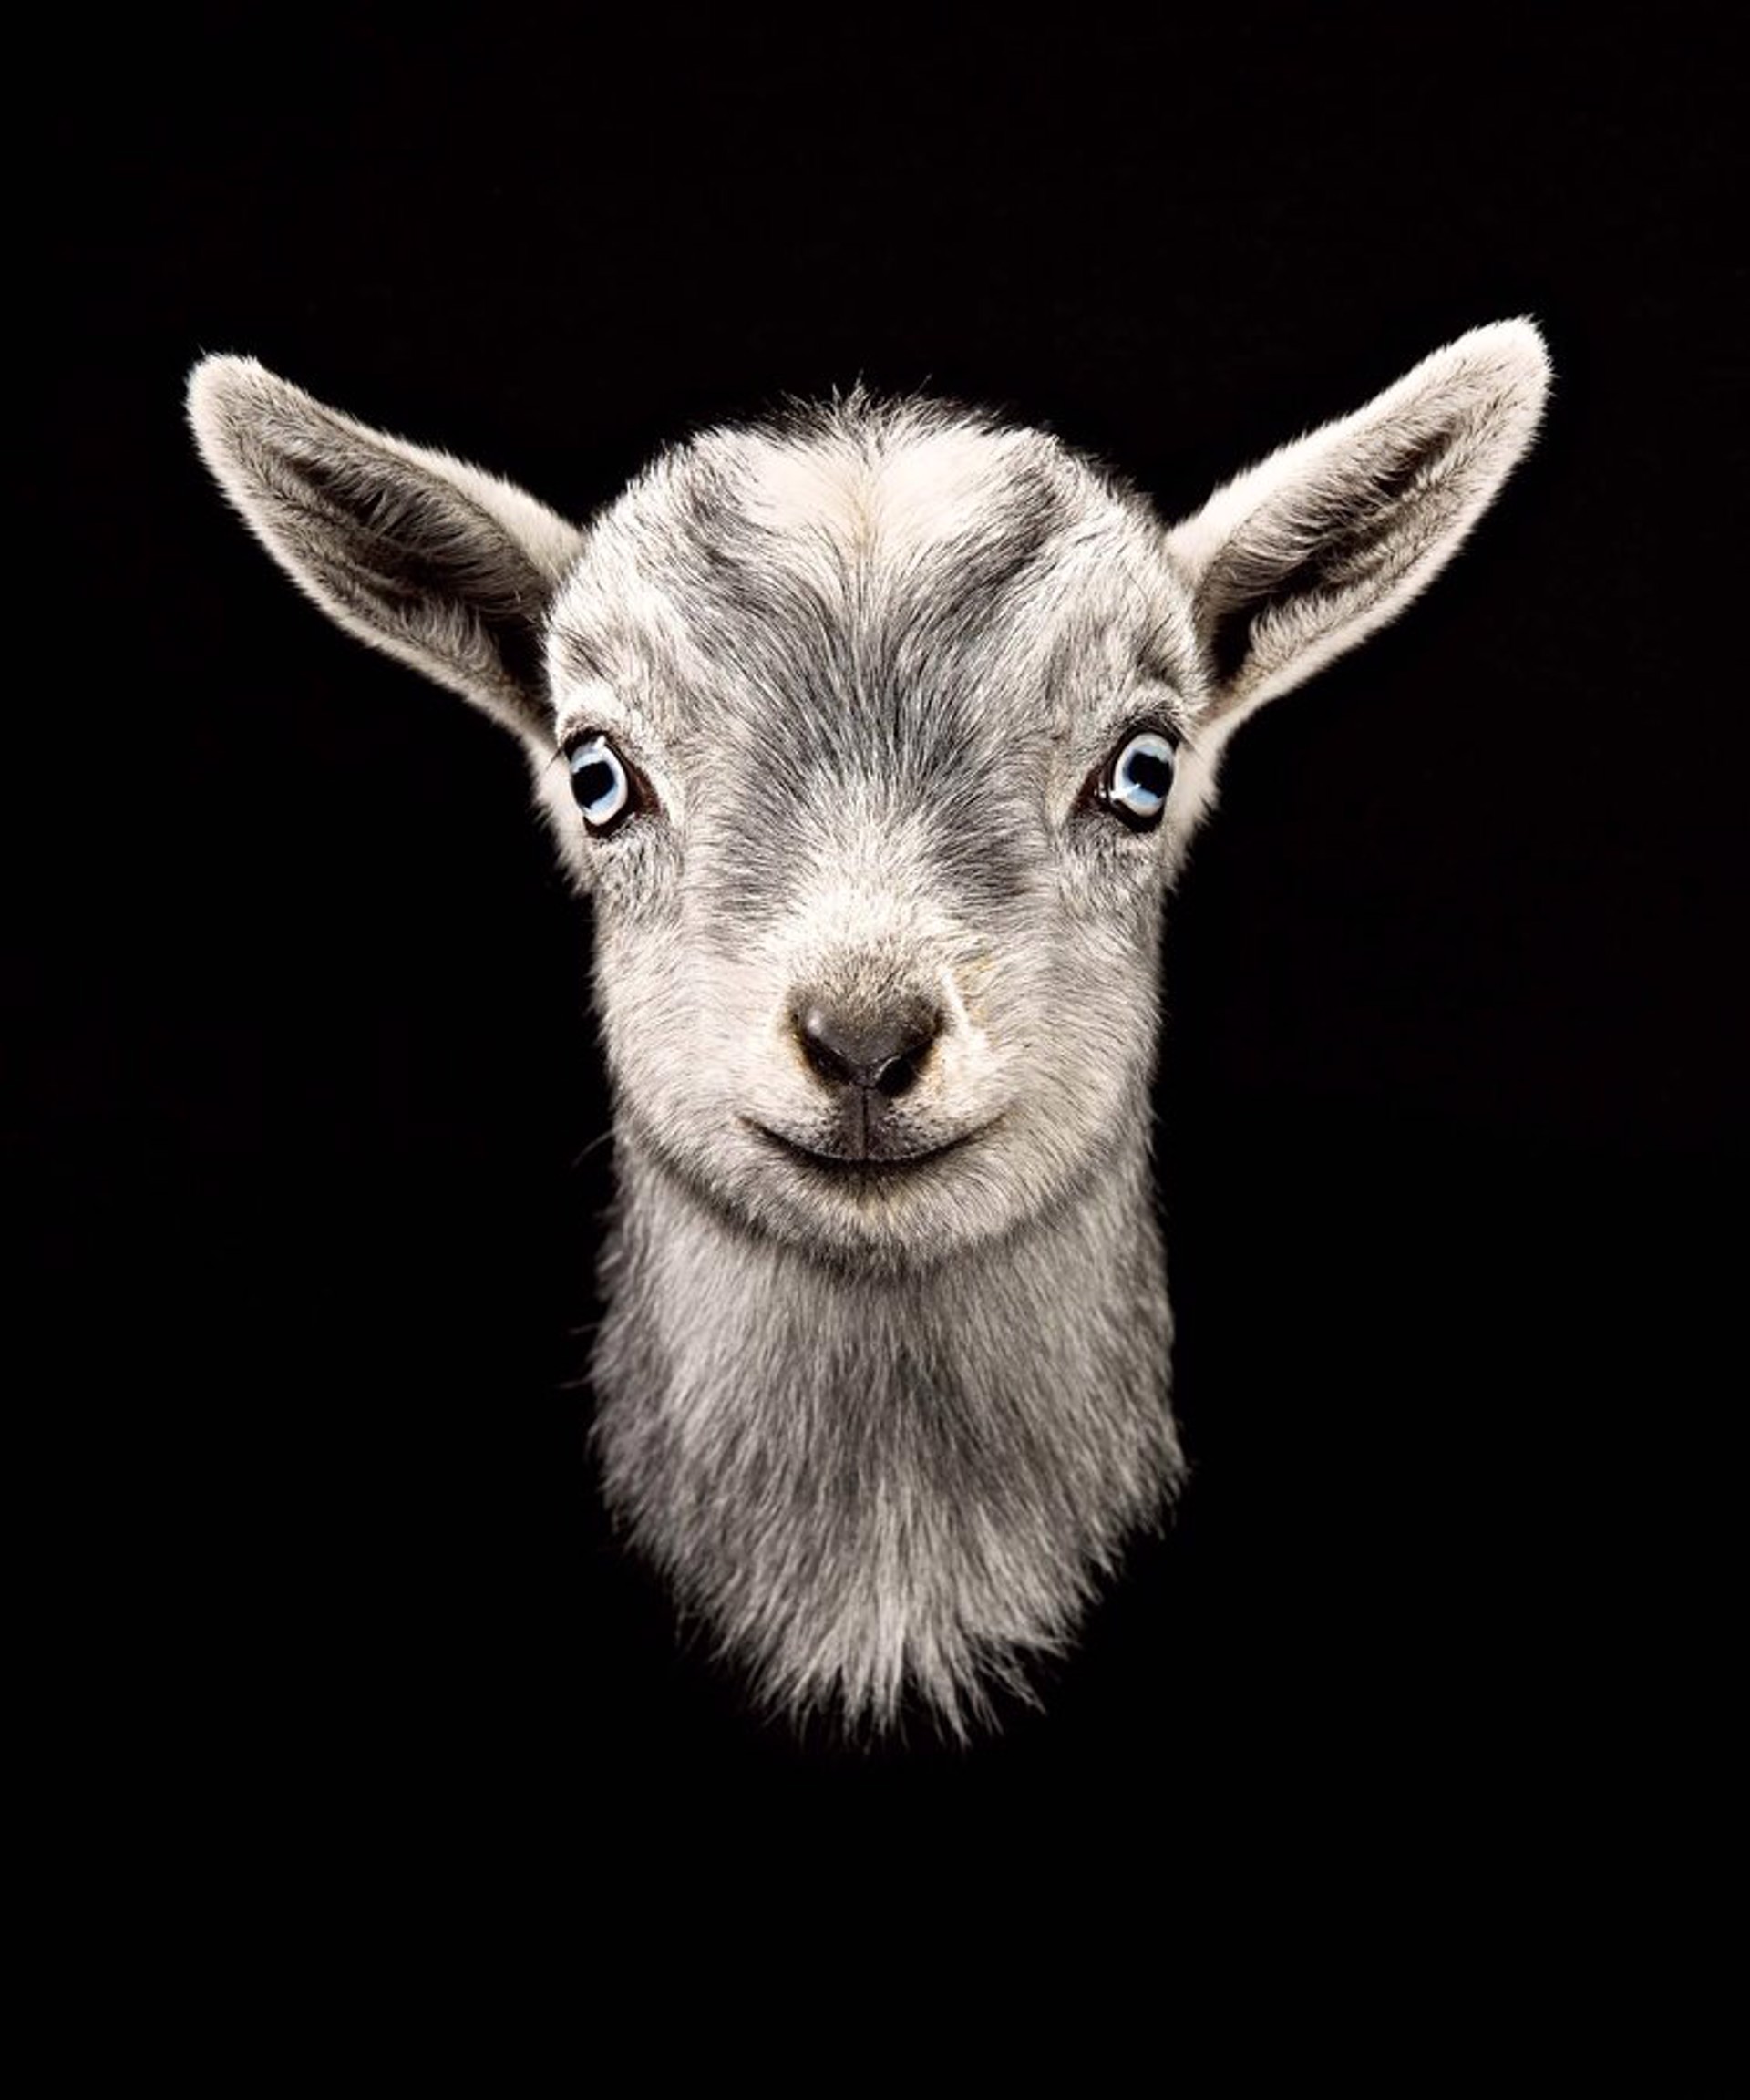 Griffin, Nigerian Dwarf Goat Kid by Evan Kafka